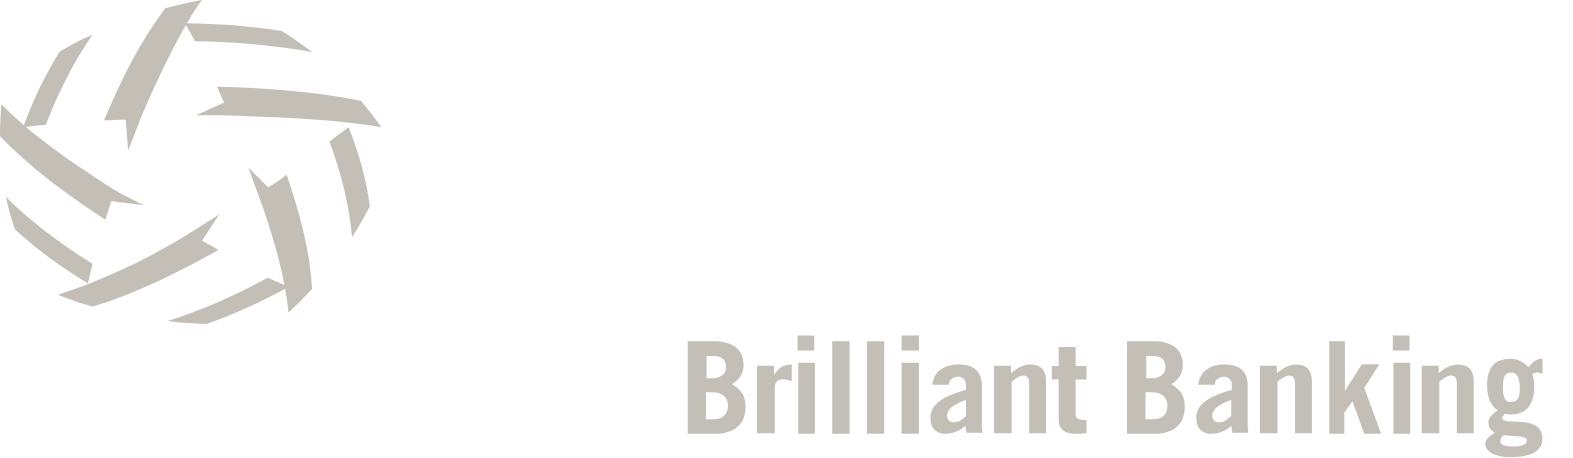 Investar Holding
 logo large for dark backgrounds (transparent PNG)